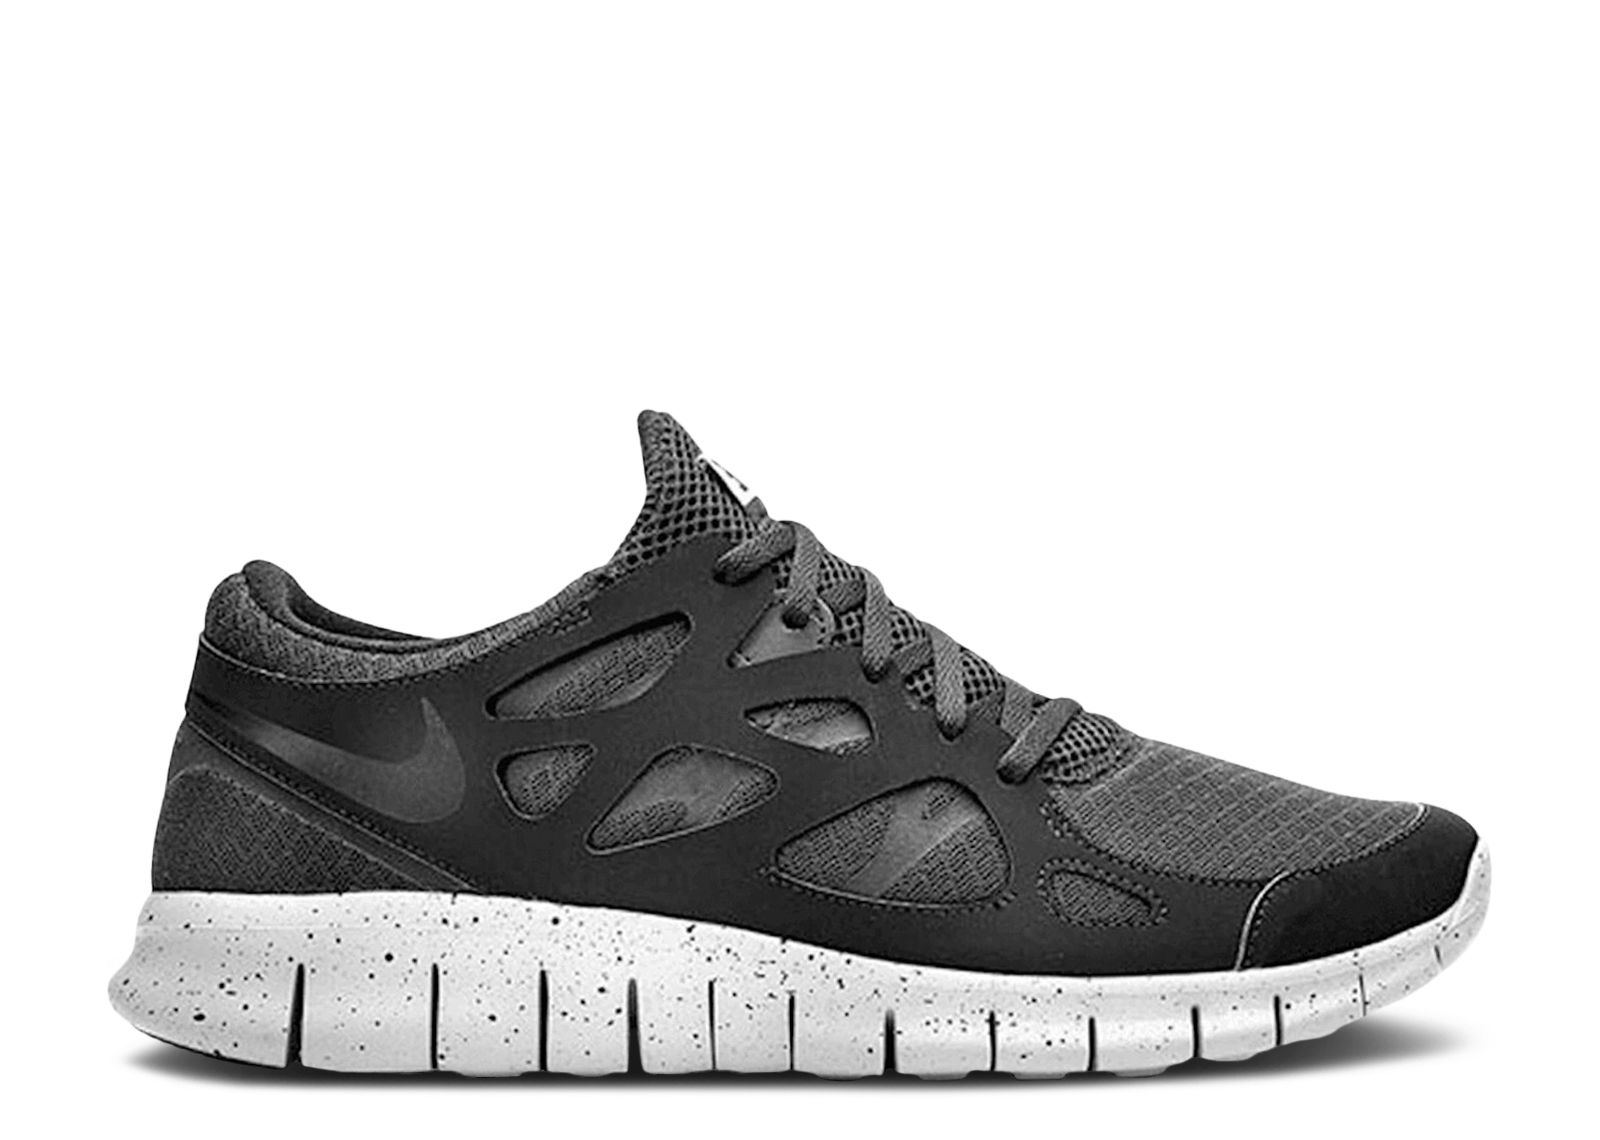 Hueco Evaluación fragancia Free Run 2 Sp 'Genealogy' - Nike - 677736 001 - black/black-cement grey |  Flight Club